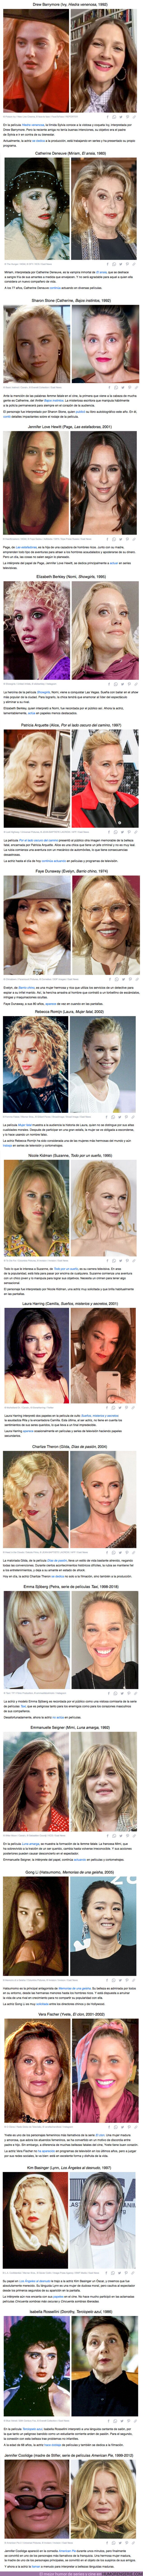 72377 - GALERÍA: Cómo lucen actualmente 18 actrices que interpretaron a bellezas fatales que nos aceleraban el pulso